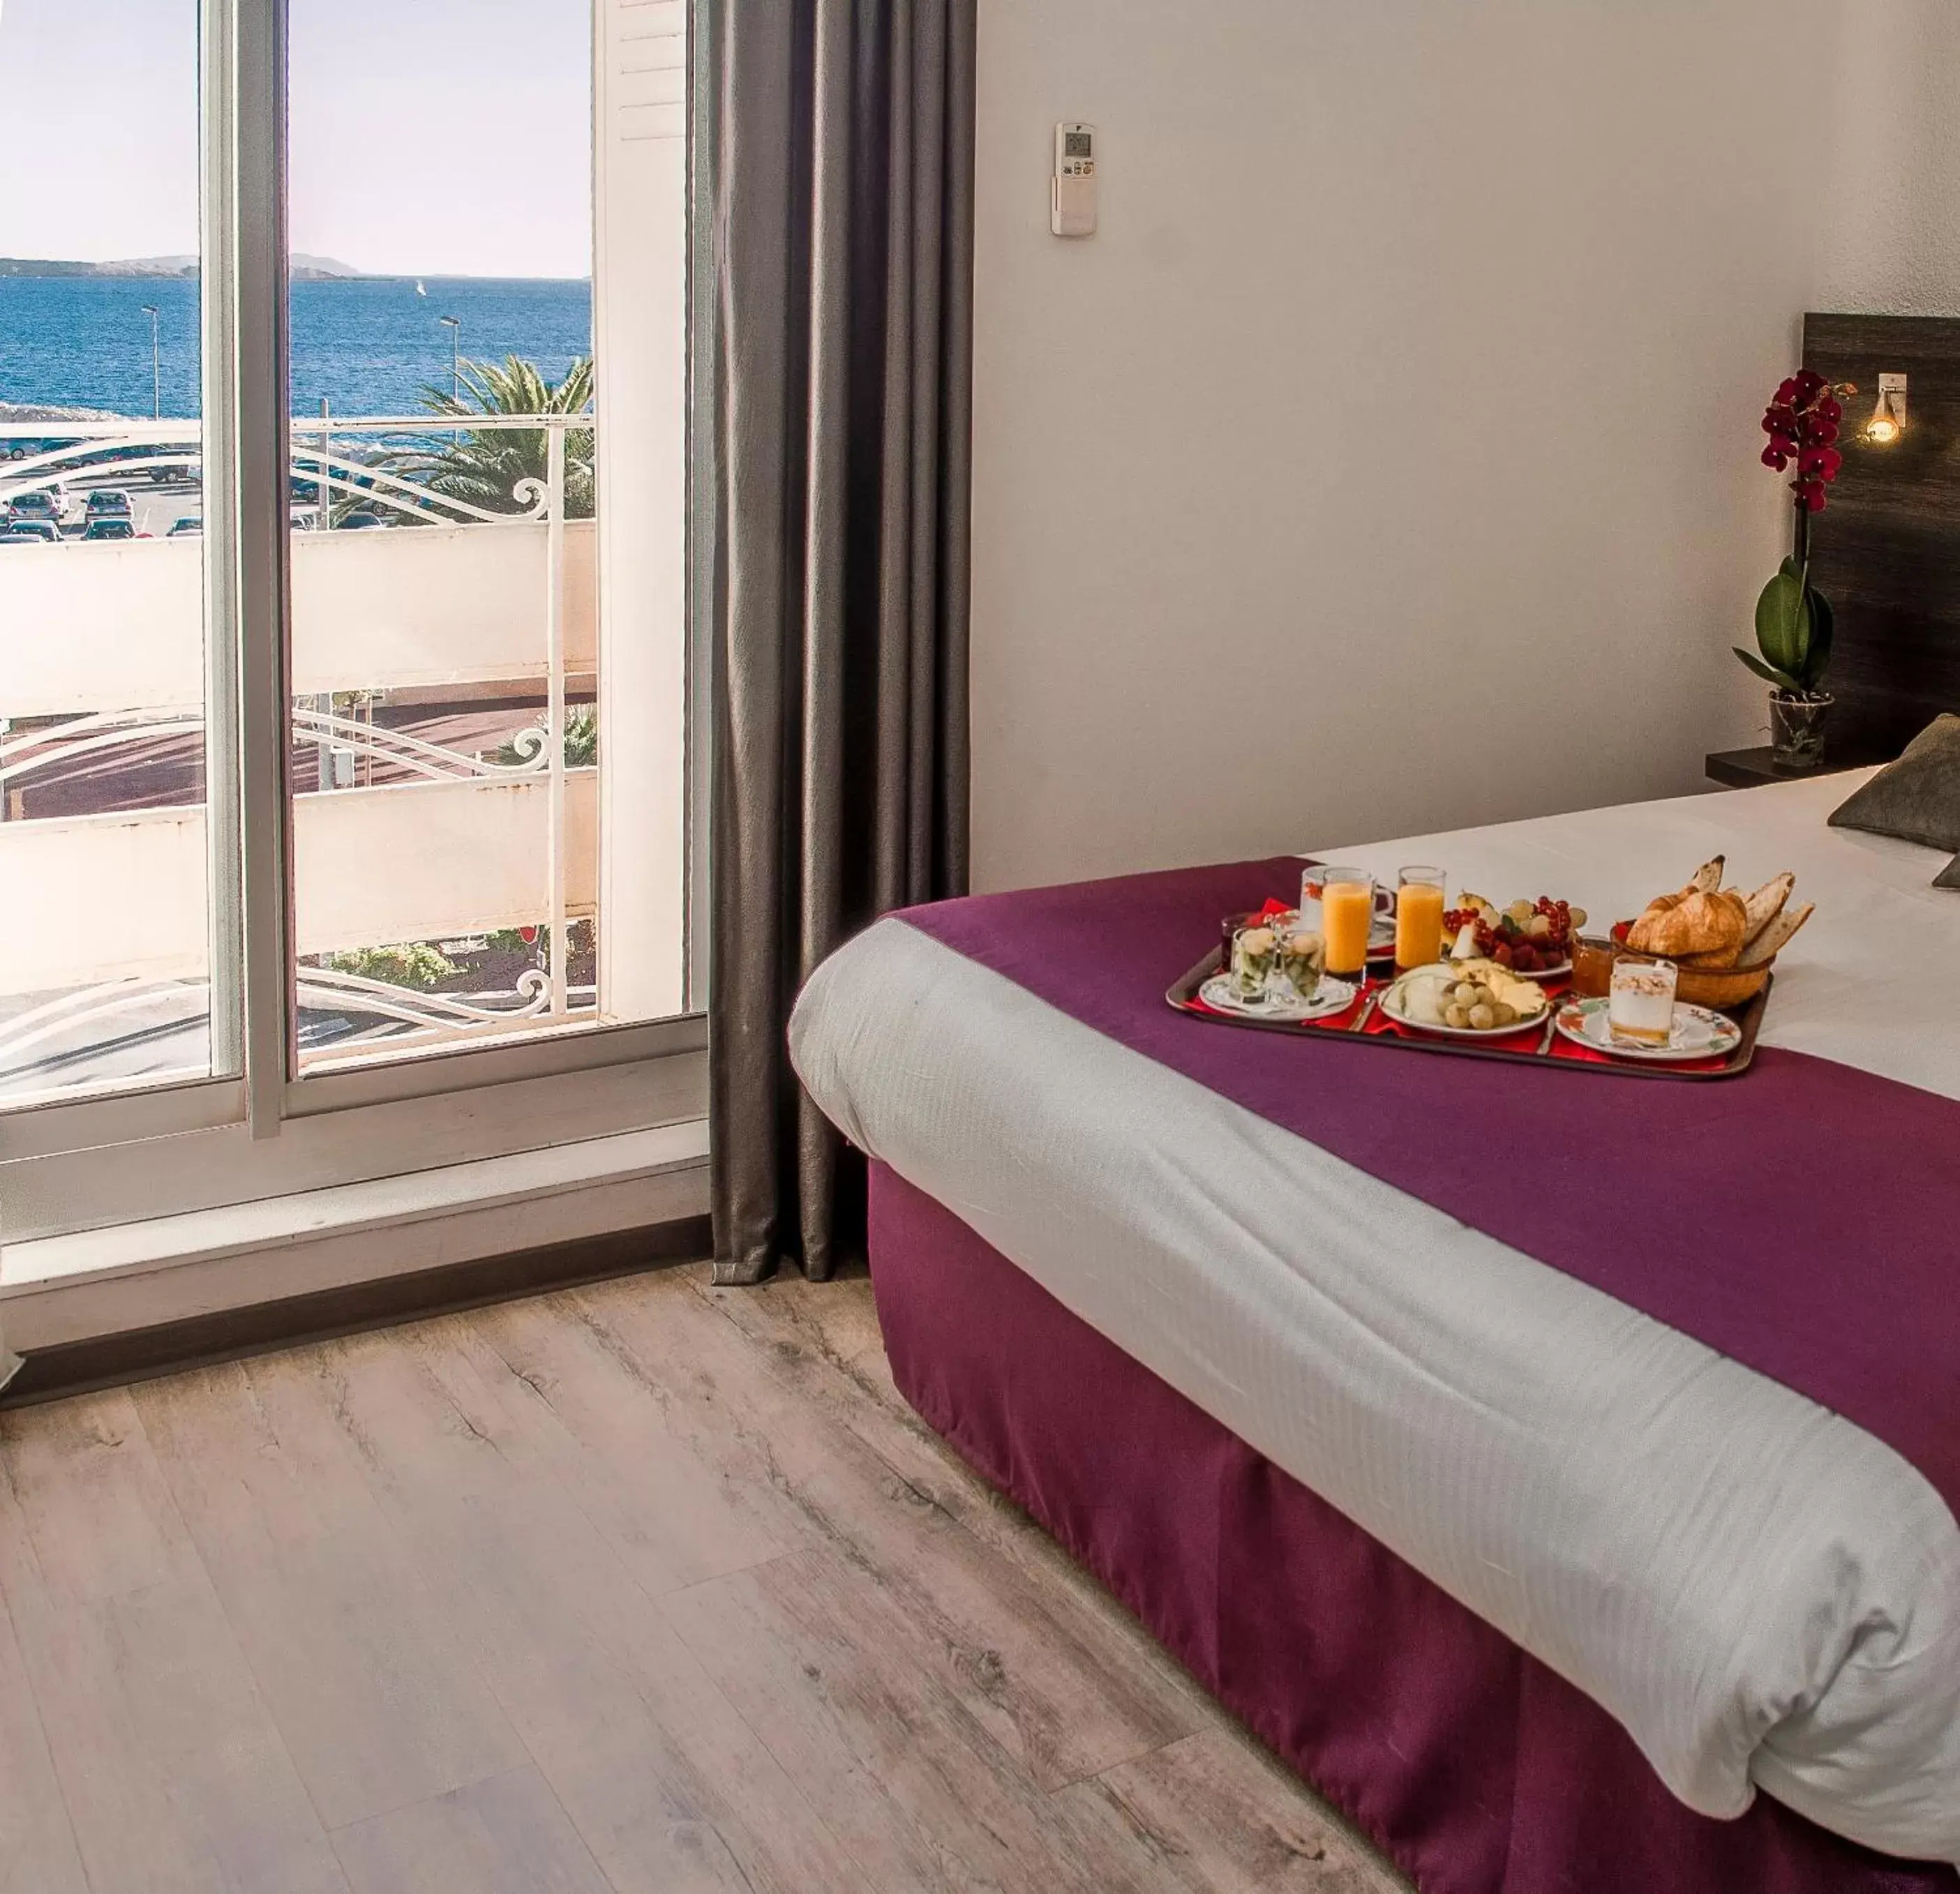 Double Room with Sea View in Hotel de la Baie